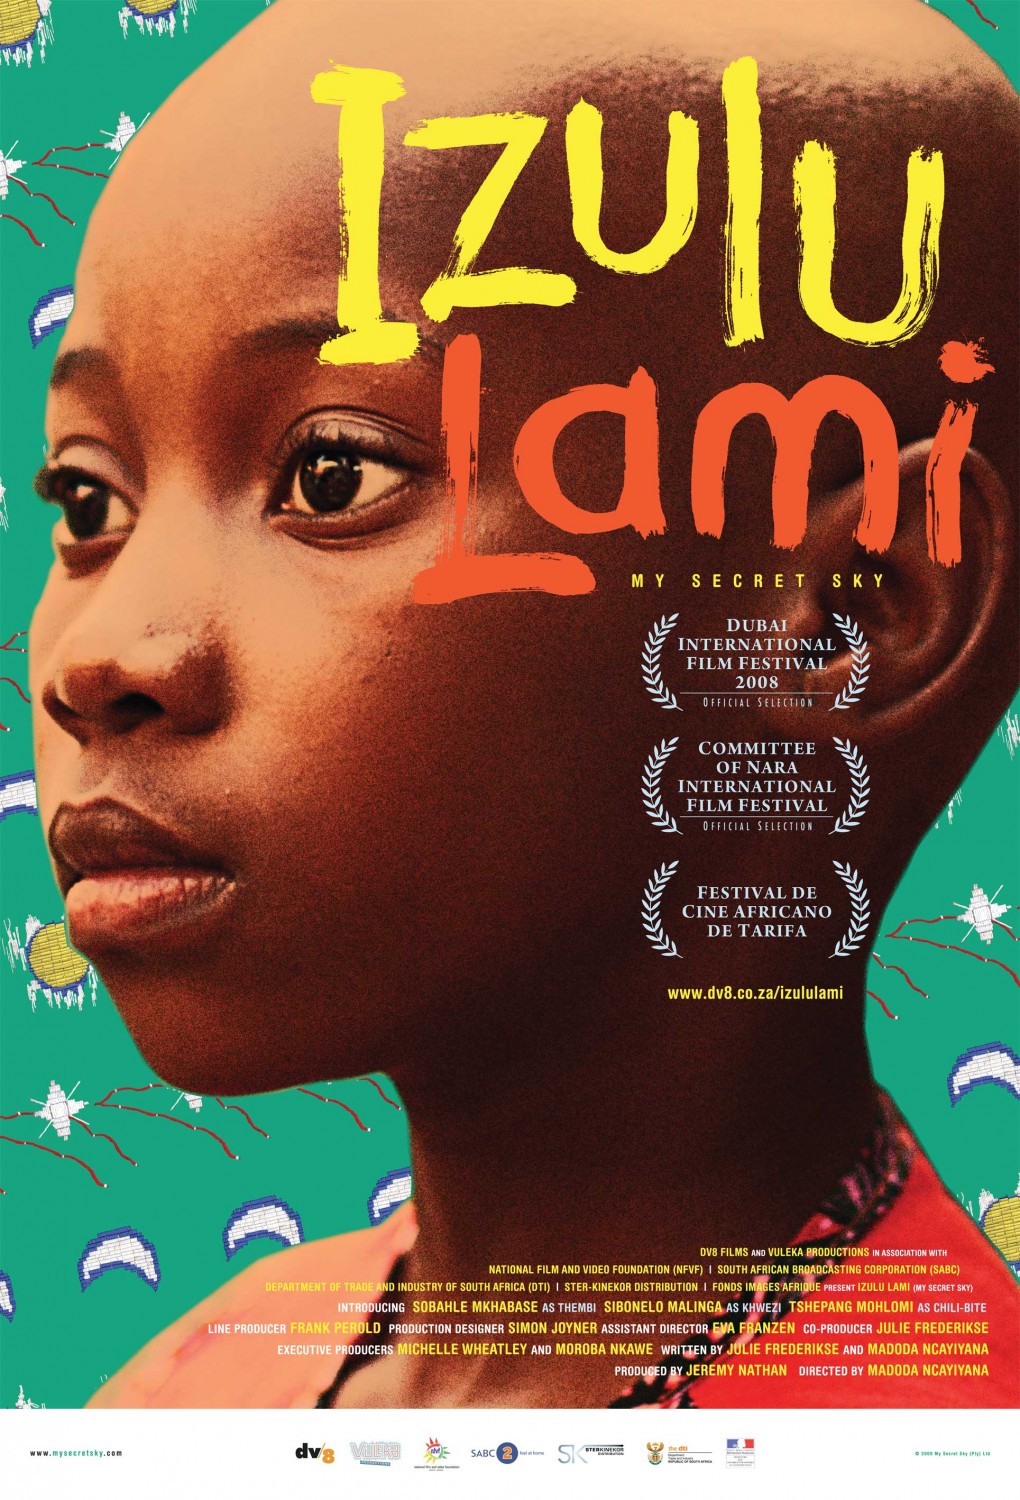 Extra Large Movie Poster Image for Izulu lami 